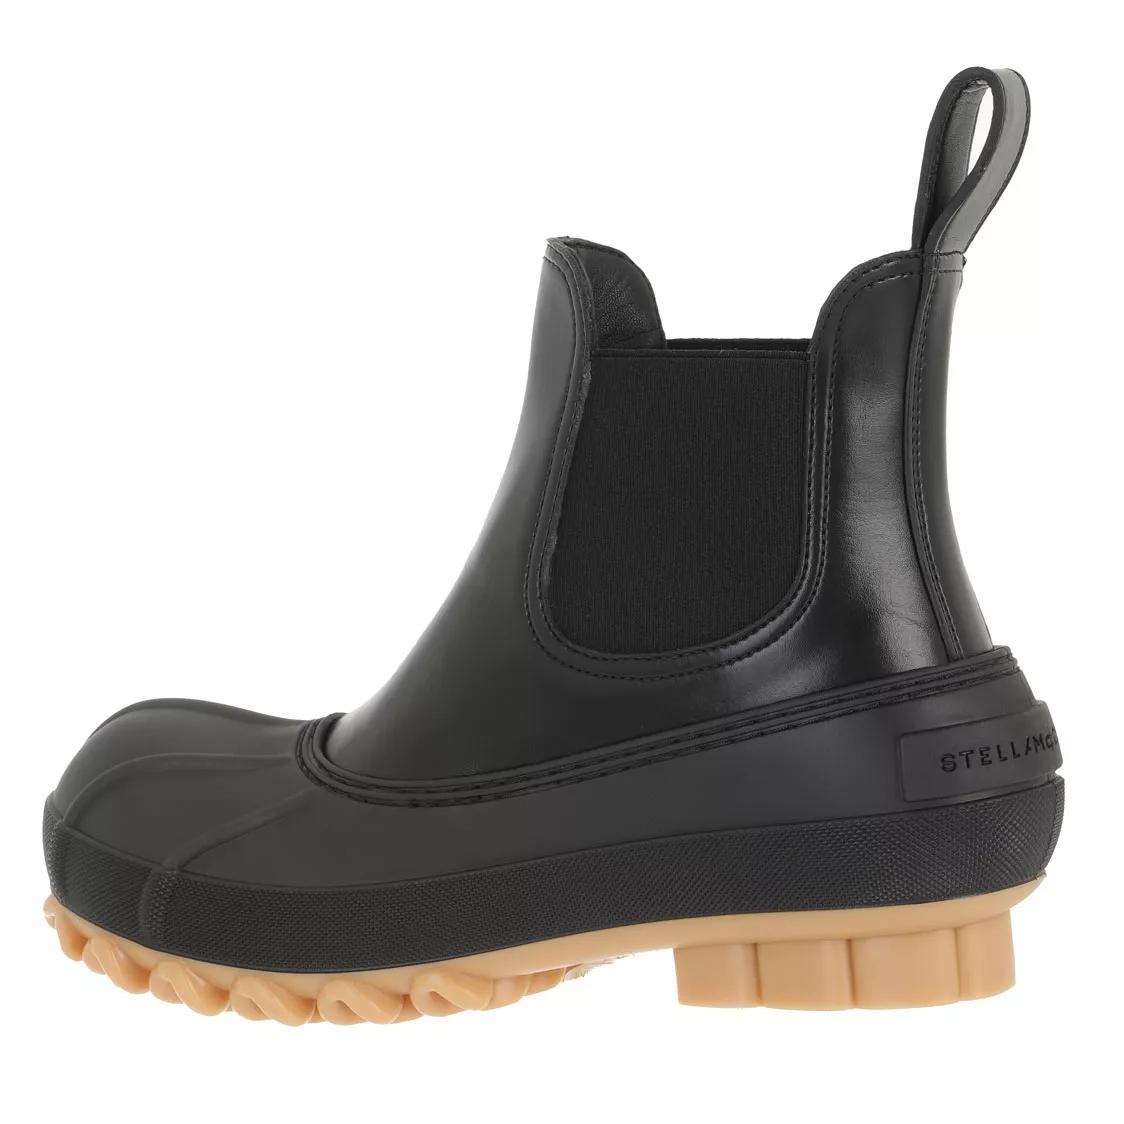 Stella McCartney Boots & Stiefeletten - Boots Leather - Gr. 36 (EU) - in Schwarz - für Damen von Stella Mccartney